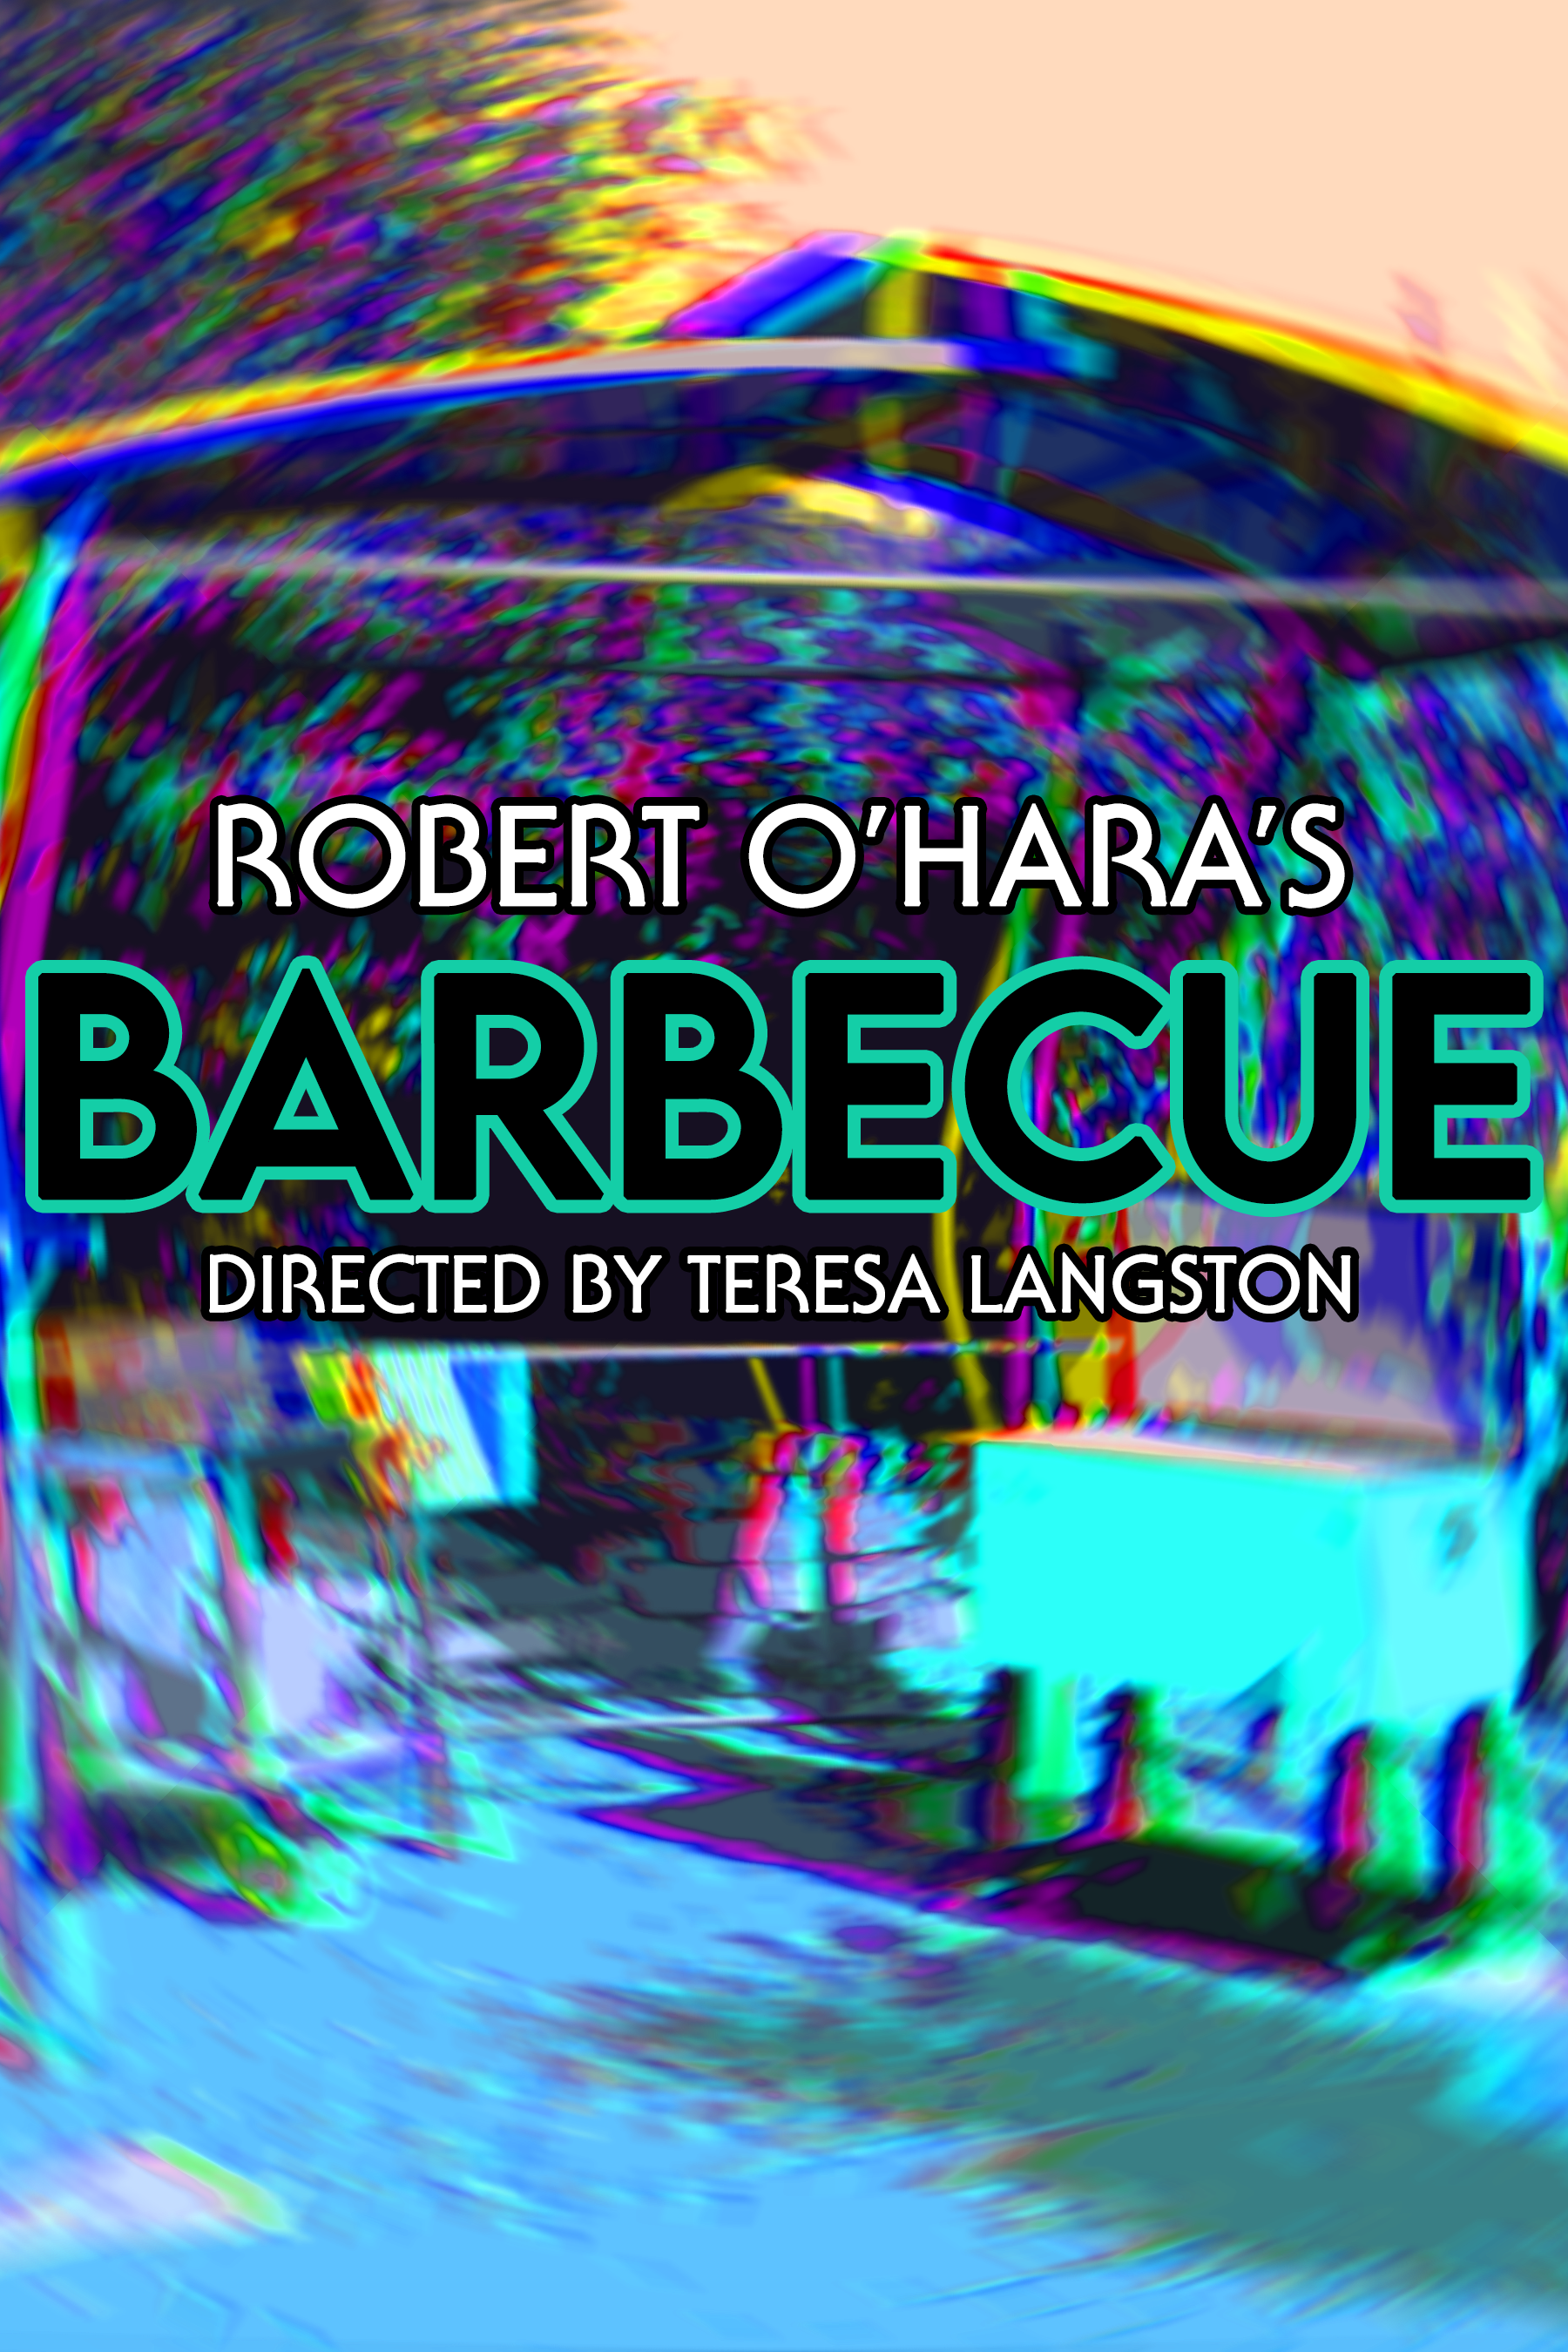 Robert O'Hara's Barbecue